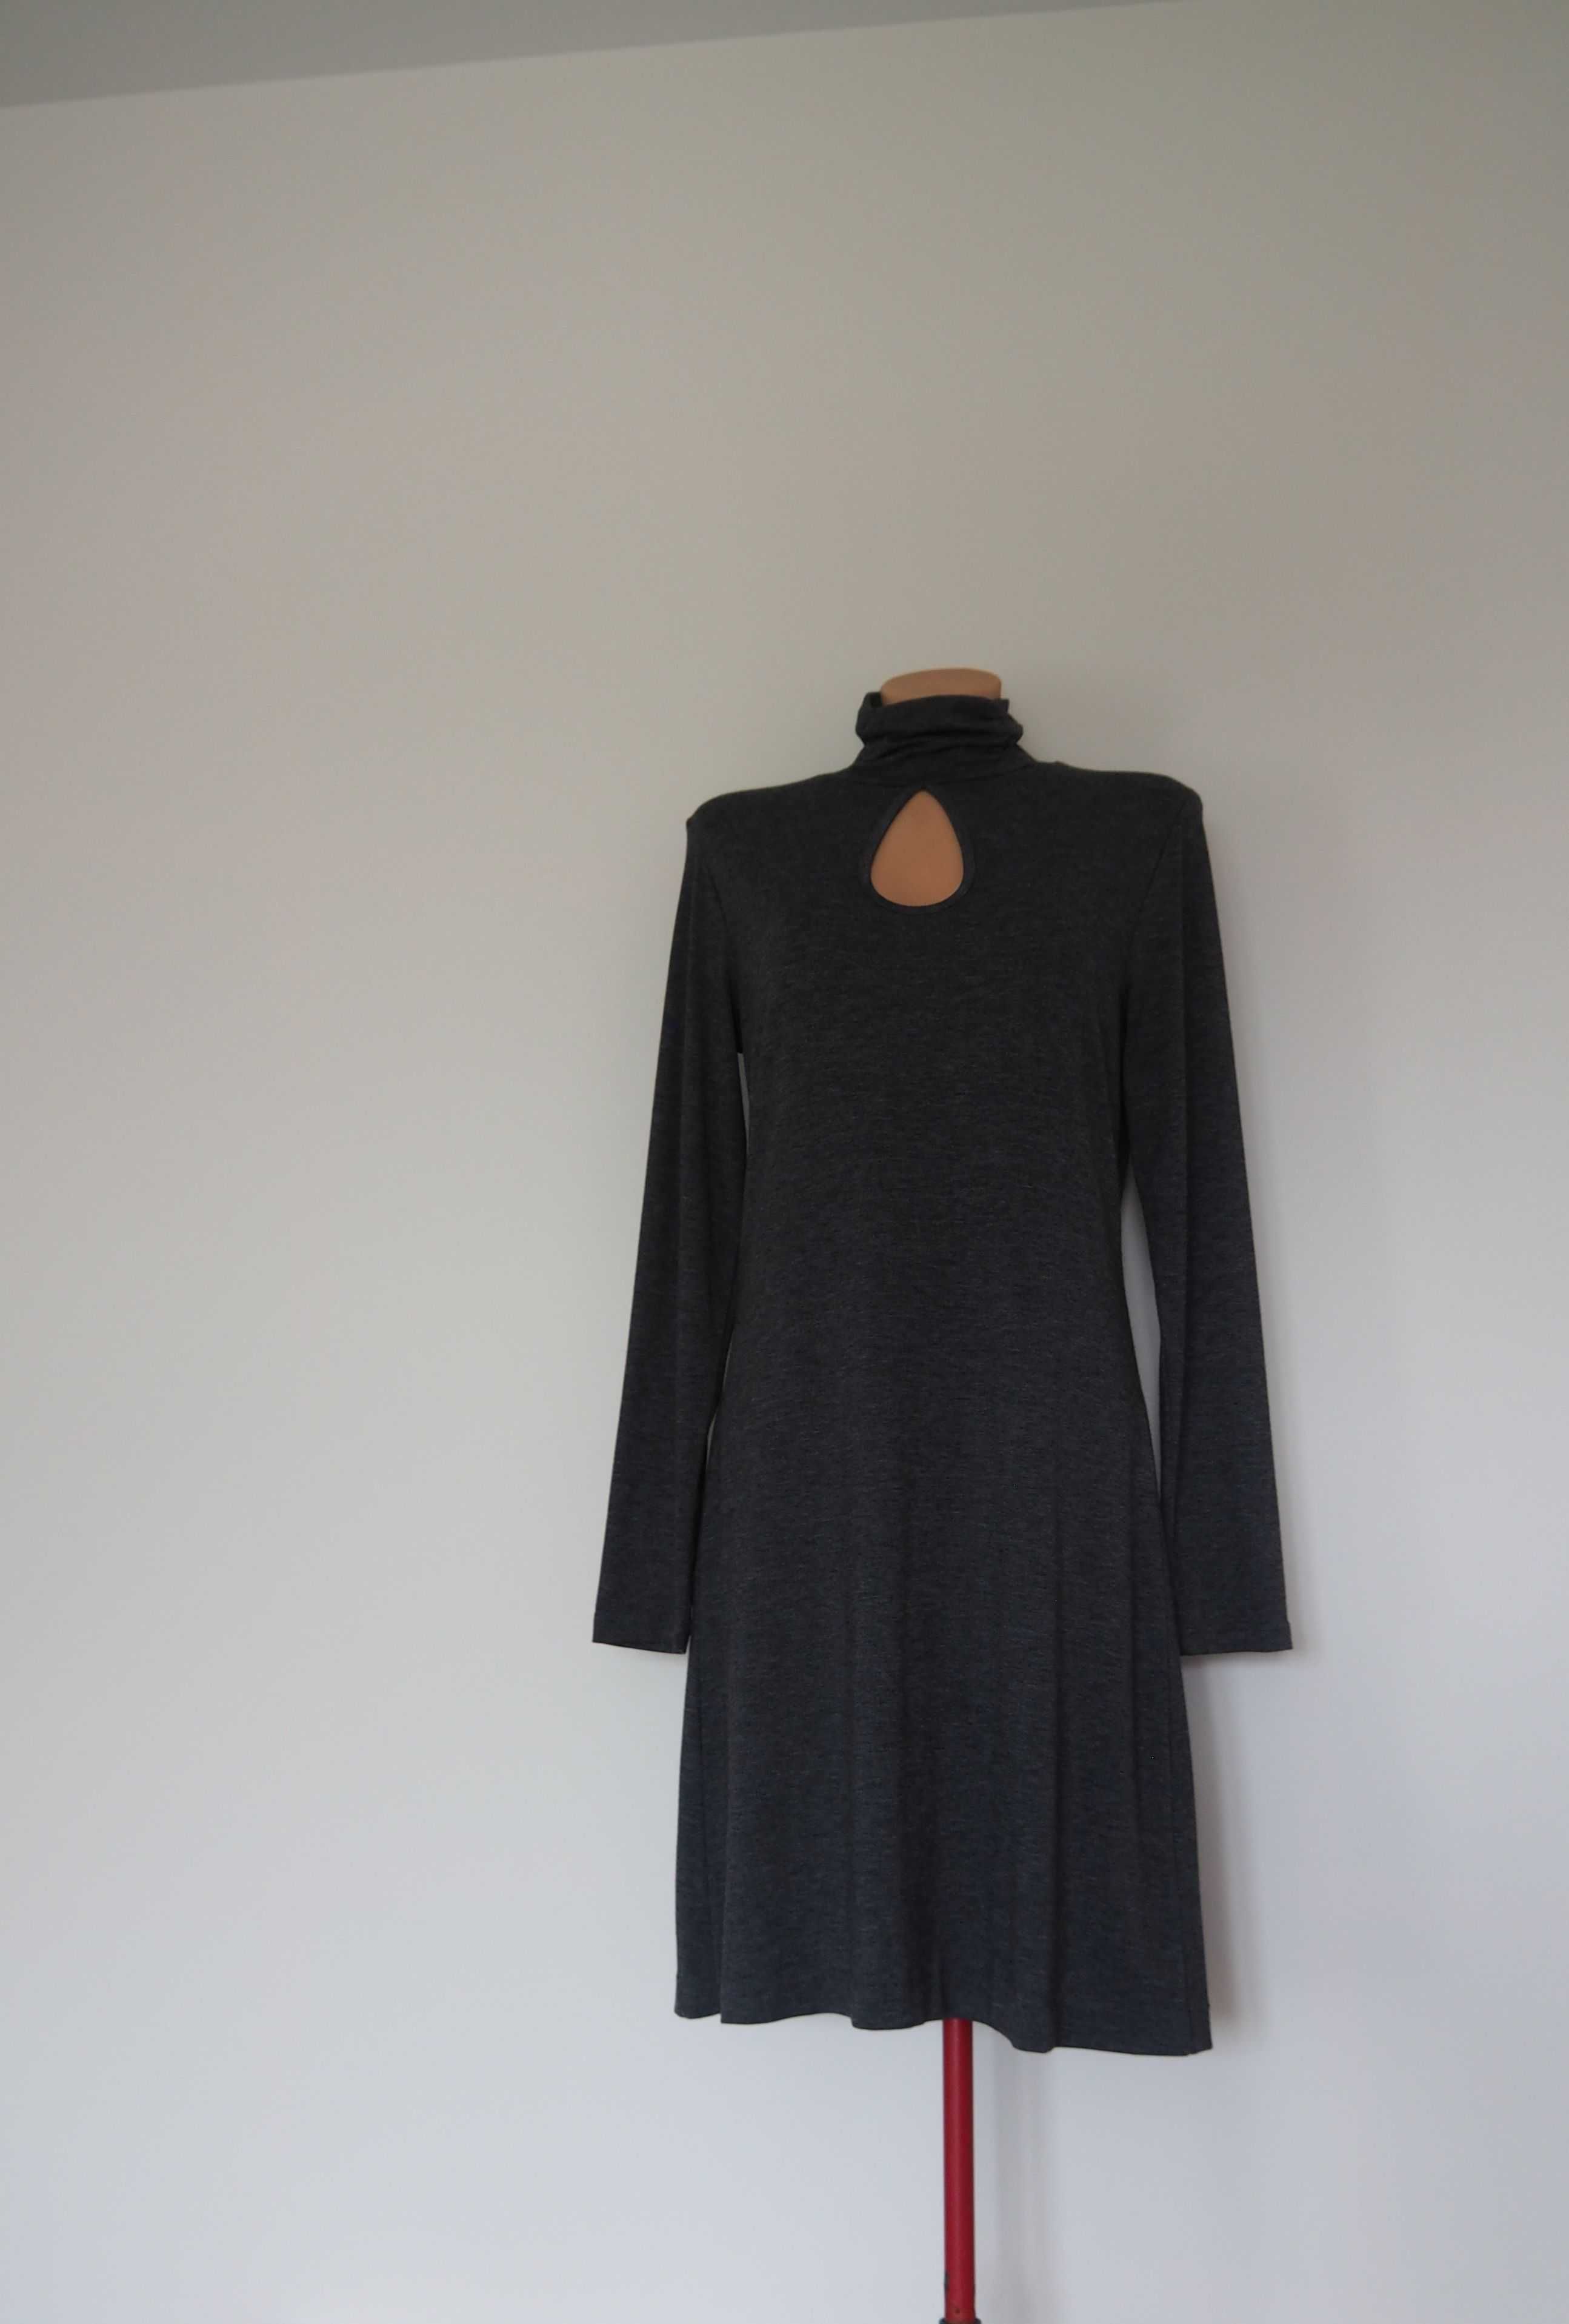 Sukienka dzianinowa, szara, melanż, 36, 38 długi rękaw, Made in Poland